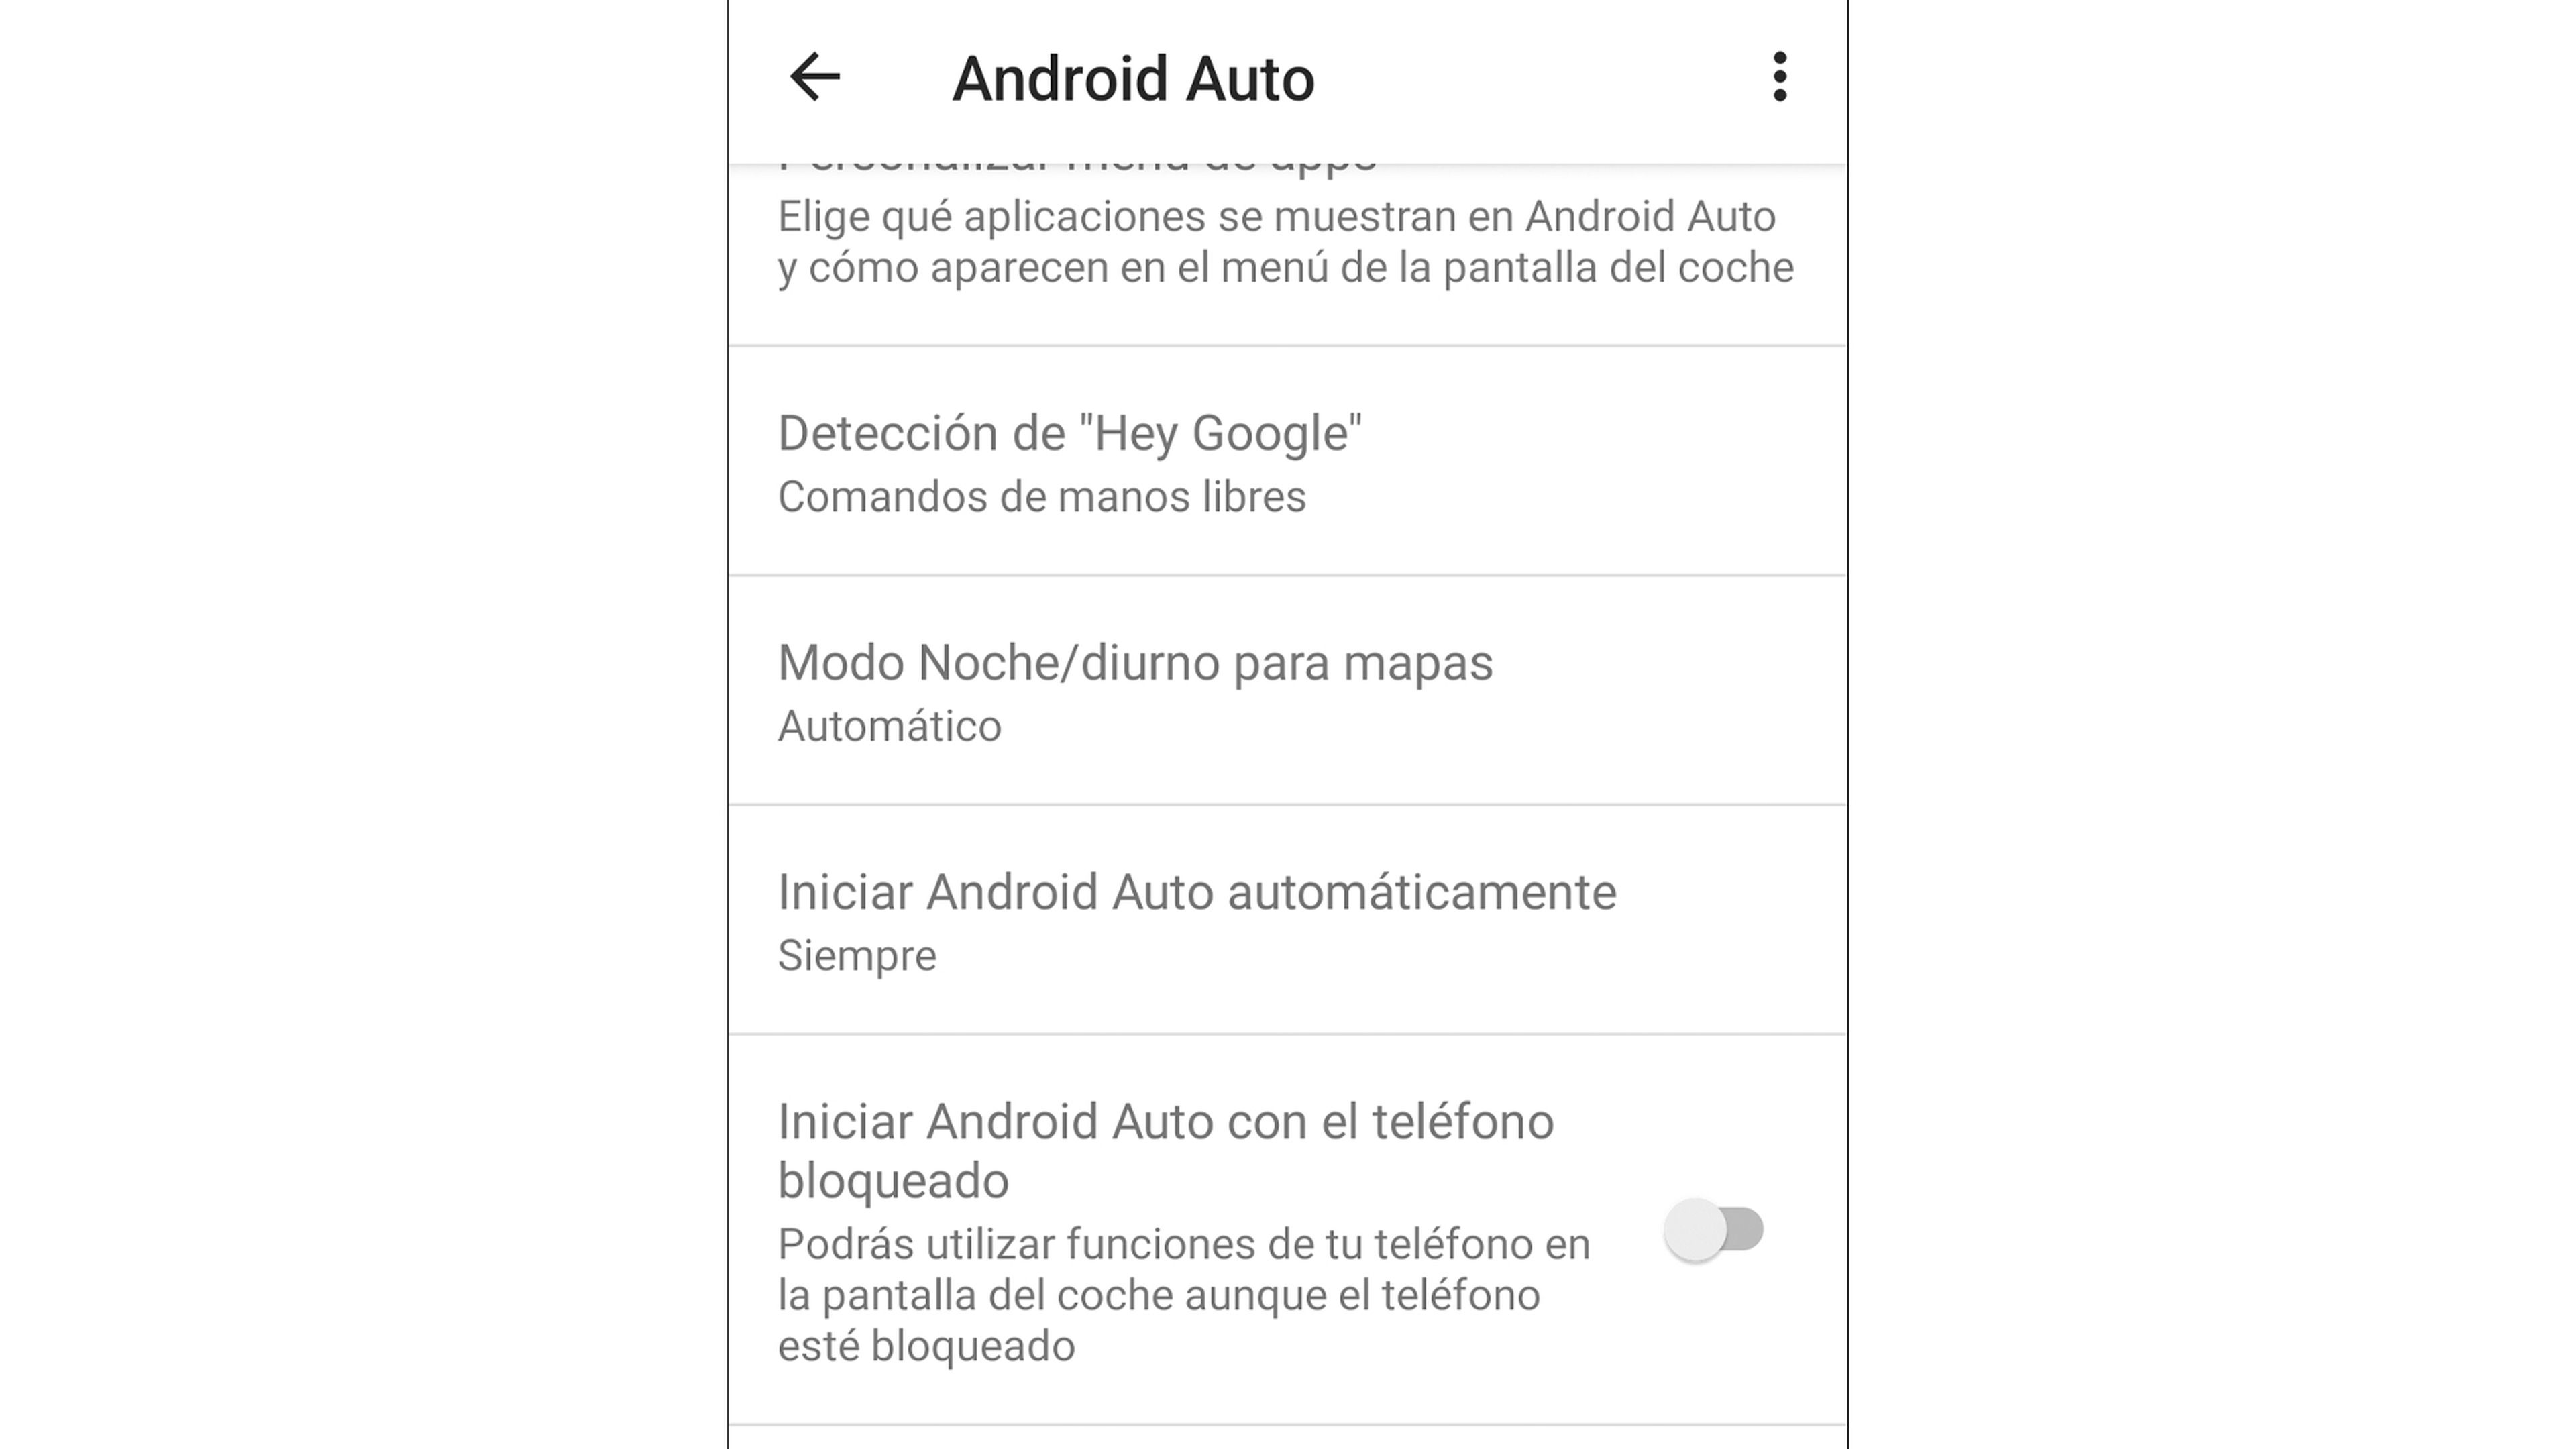 Iniciar Android Auto con el teléfono bloqueado